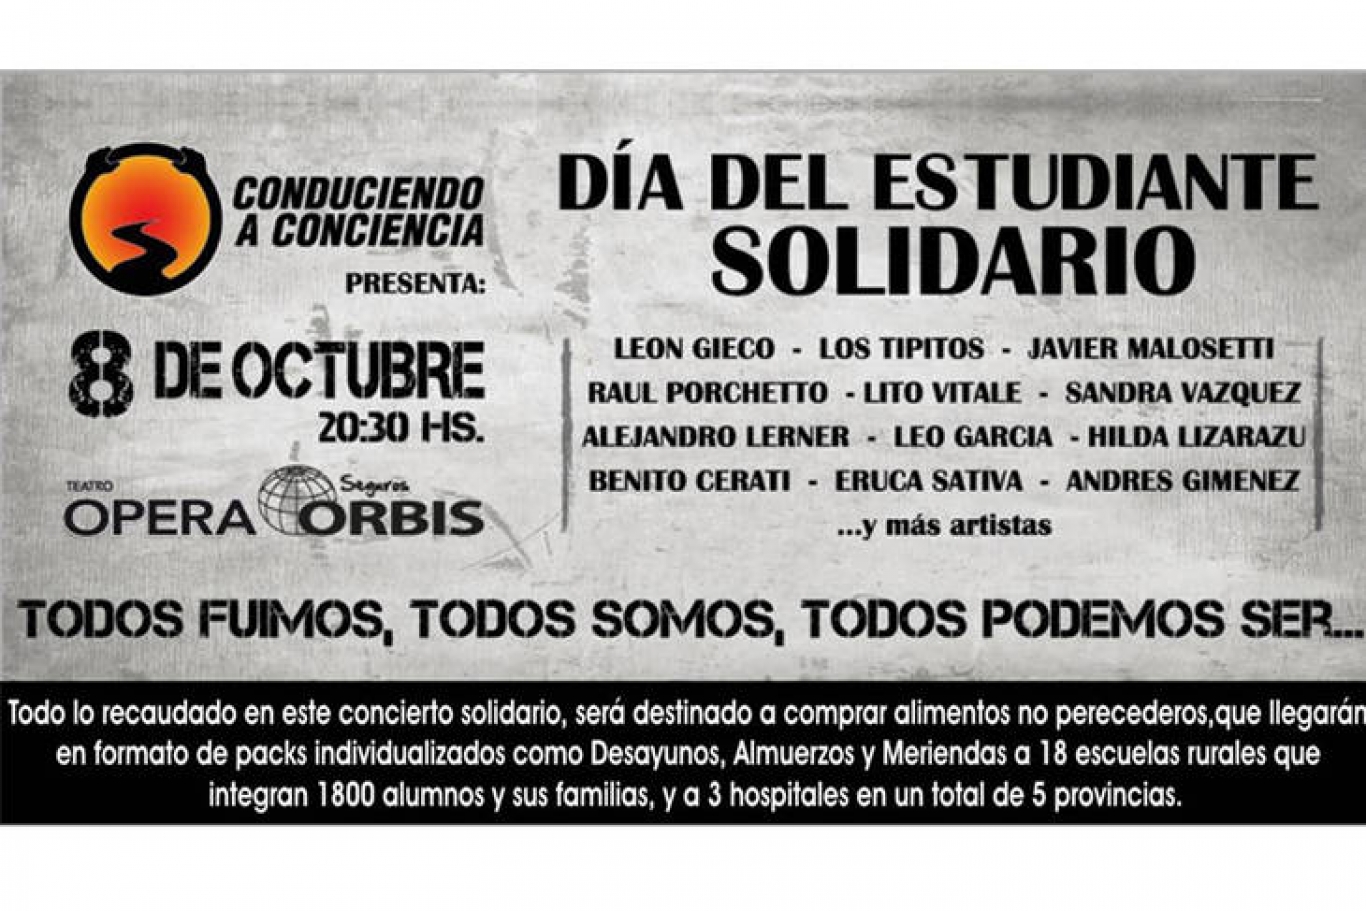 León Gieco nos invita al streaming del Día del estudiante solidario el próximo 8 de octubre